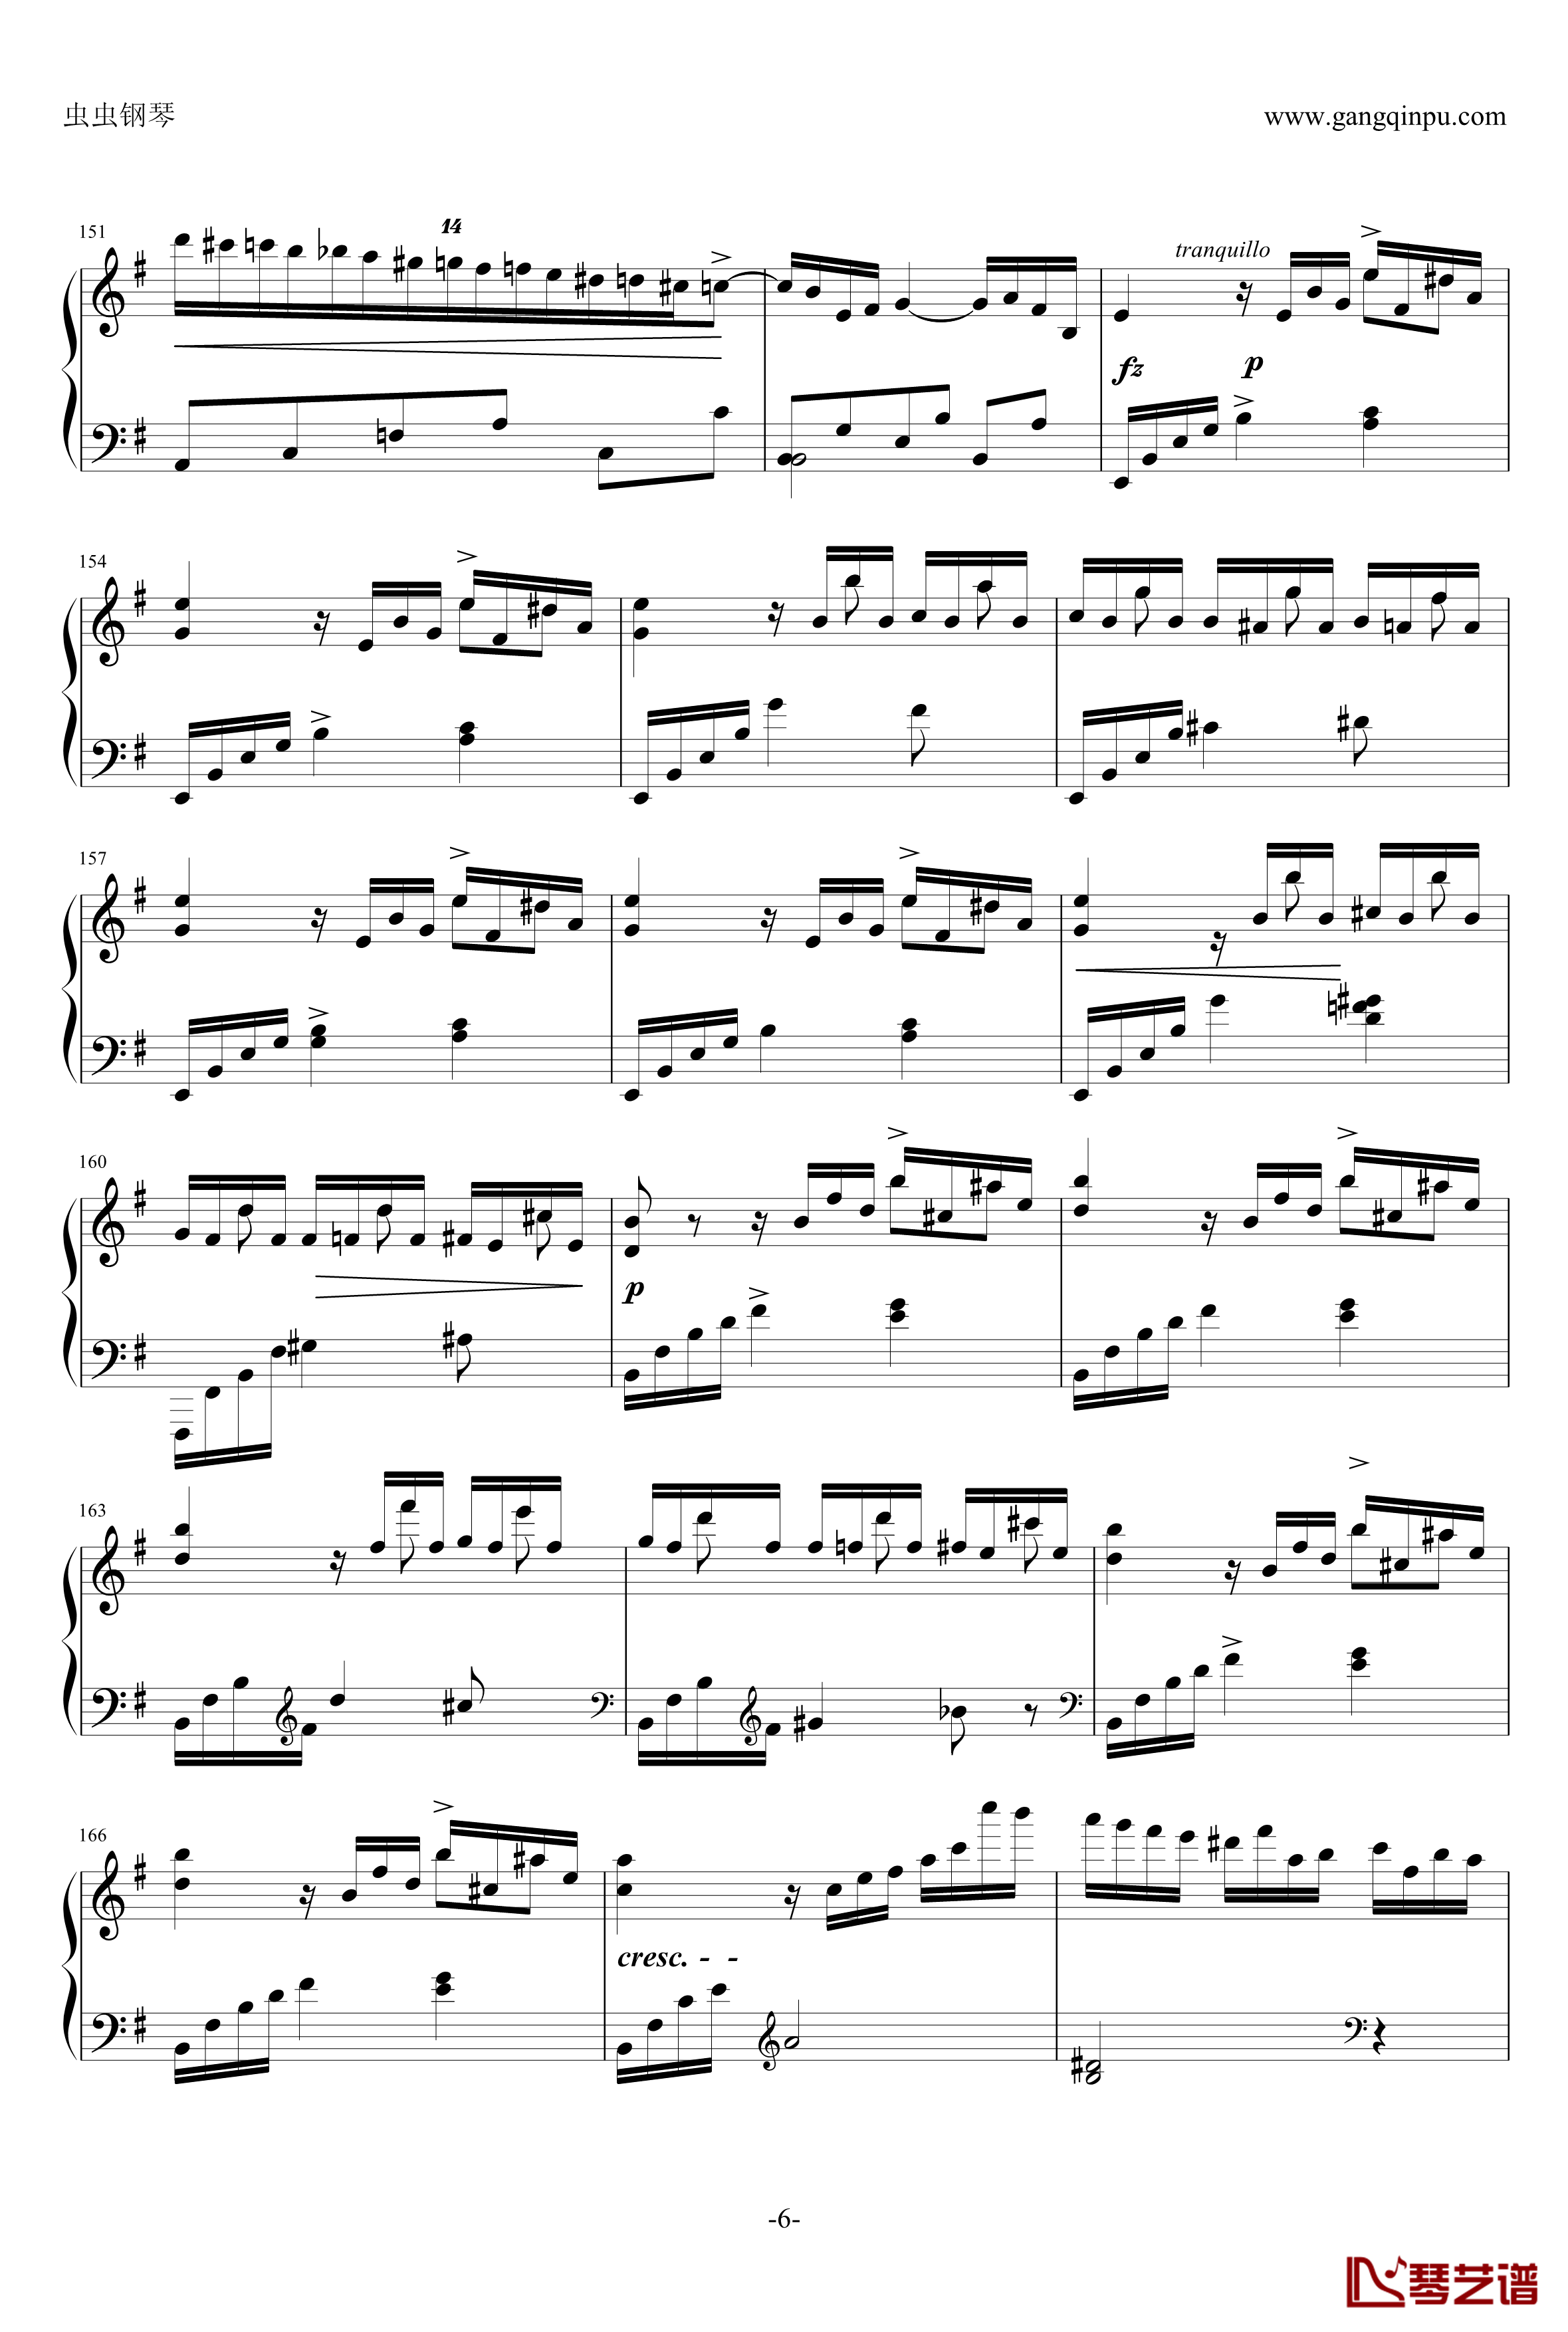 e小调钢琴协奏曲钢琴谱-乐之琴简易钢琴版-肖邦-chopin6